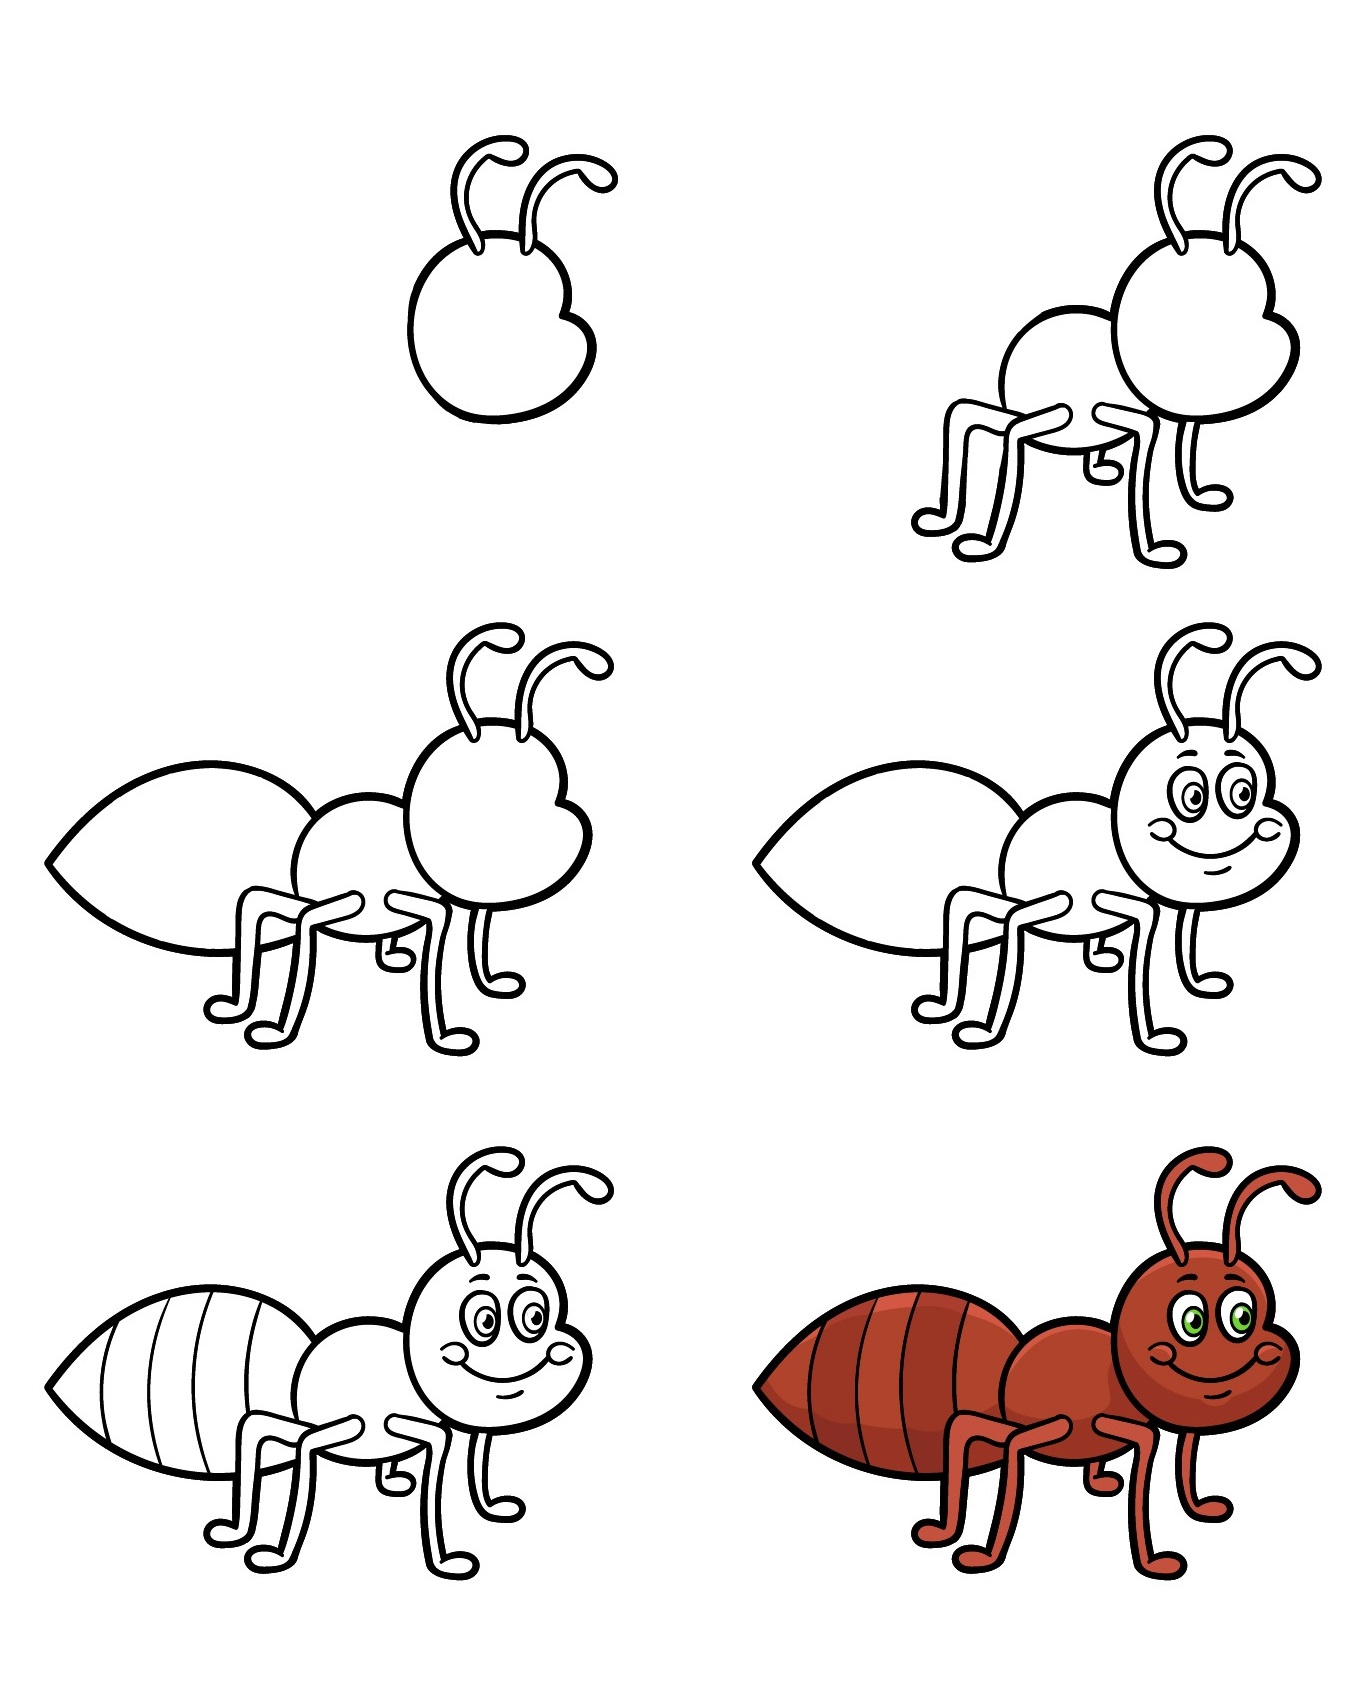 Vẽ con kiến dễ dàng cho bé  YeuTreNet